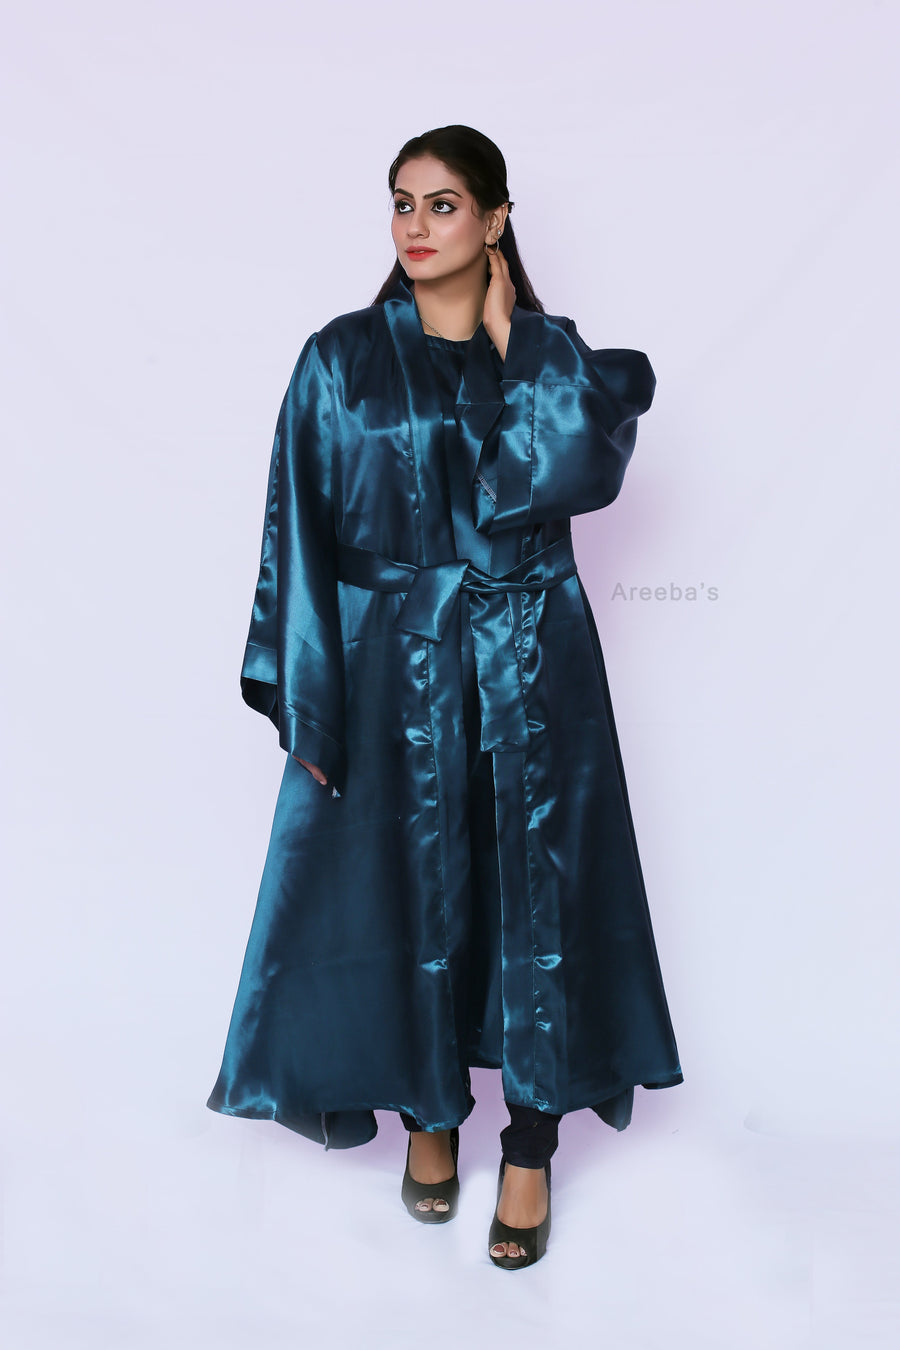 Mirage Dania Abaya- Areeba's Couture